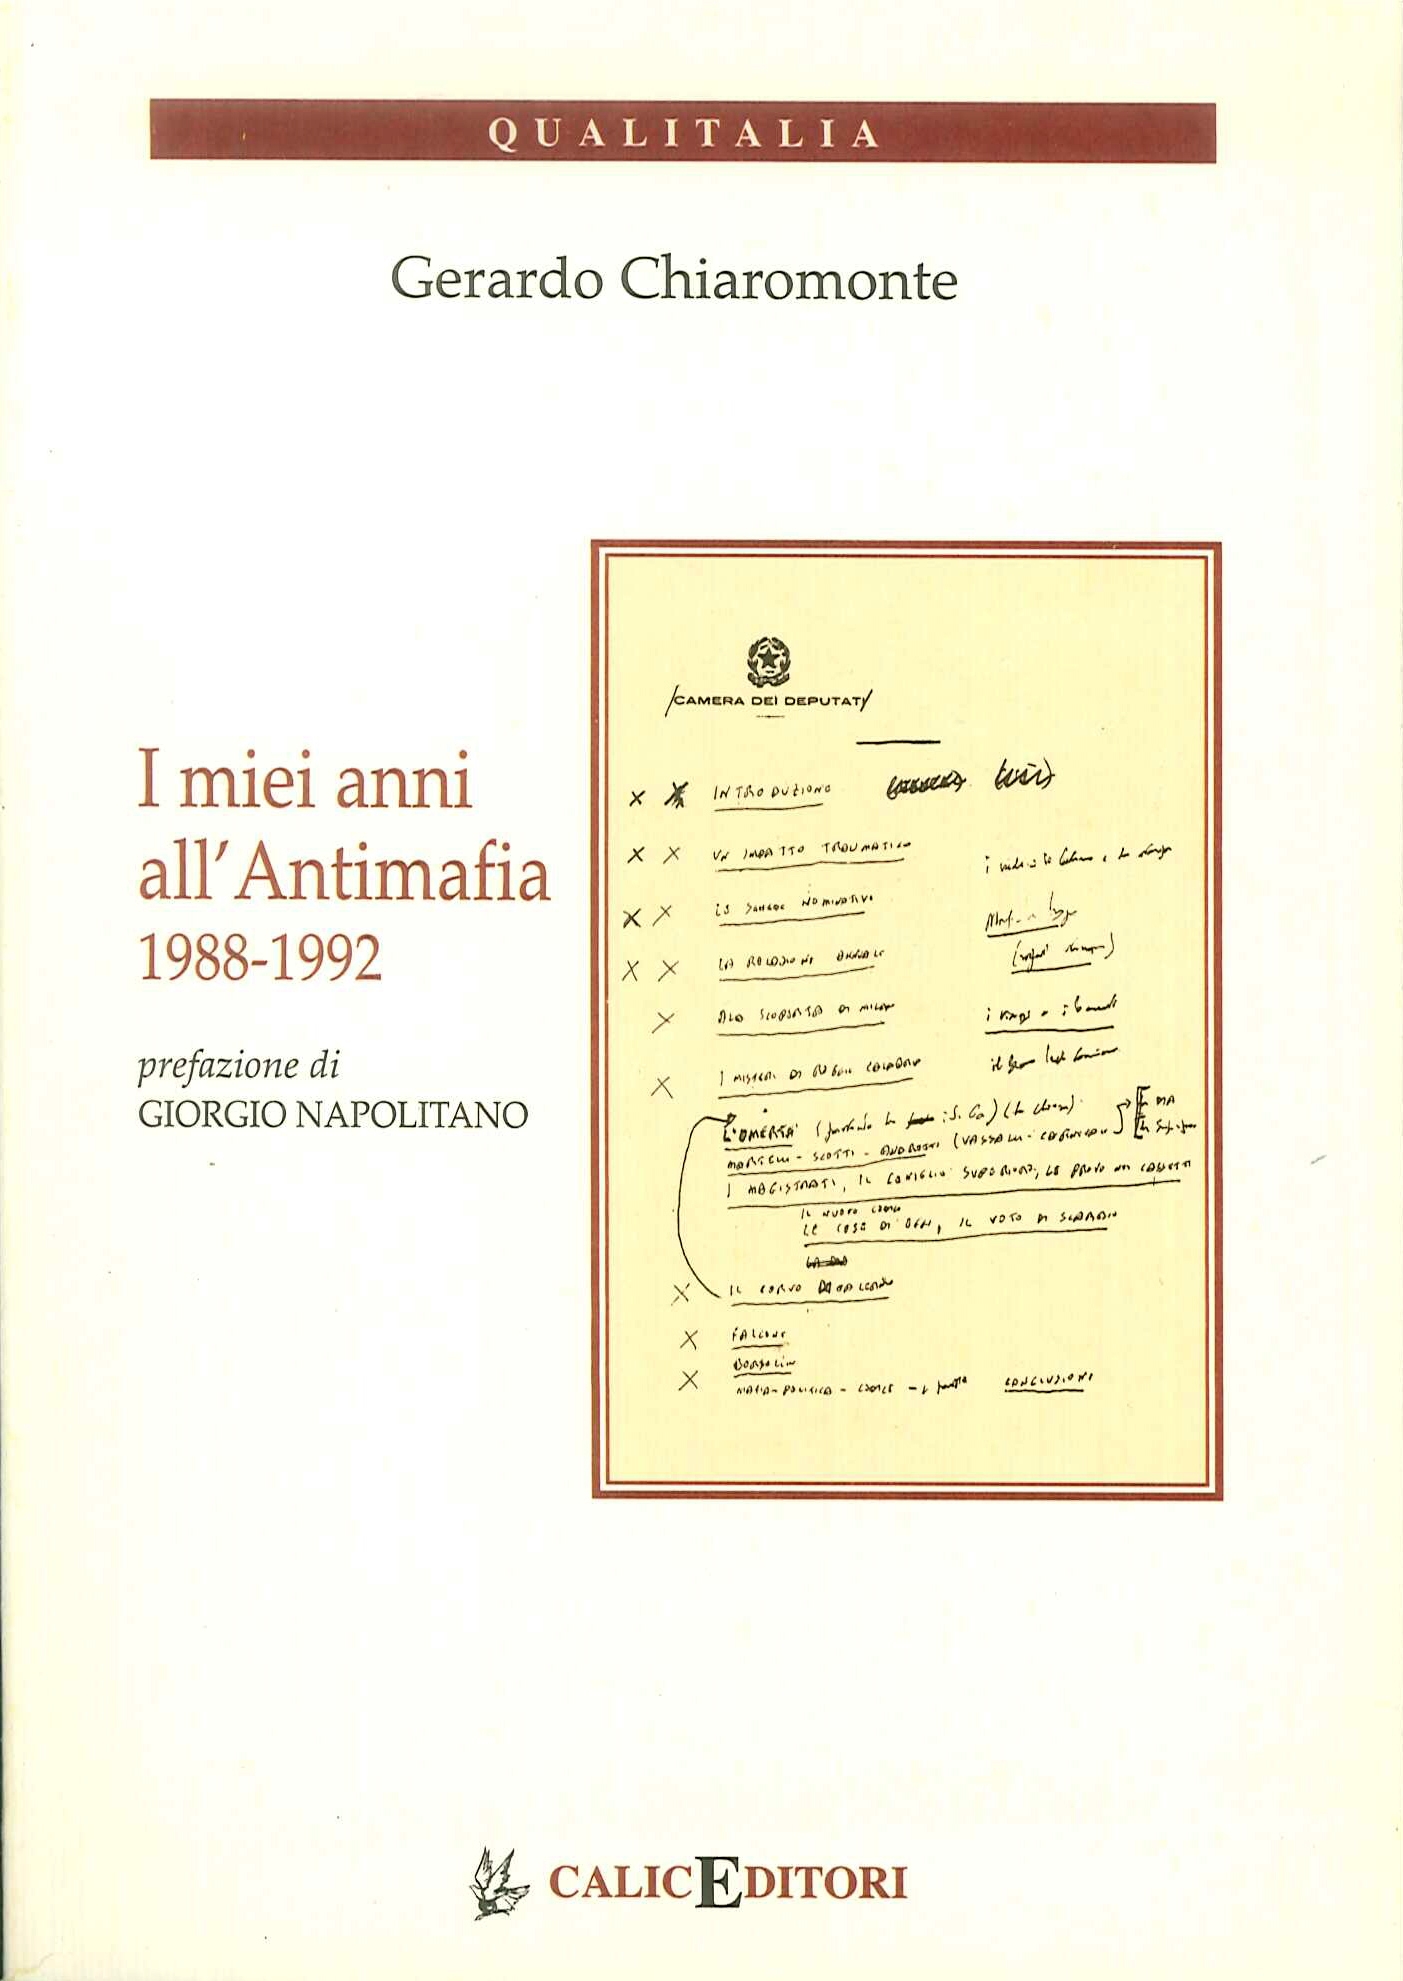 I miei anni all'Antimafia 1988-1992. Gli appunti del dirigente del PCI sul fronte dell'antimafia e della legalità costituzionale - Chiaromonte Gerardo